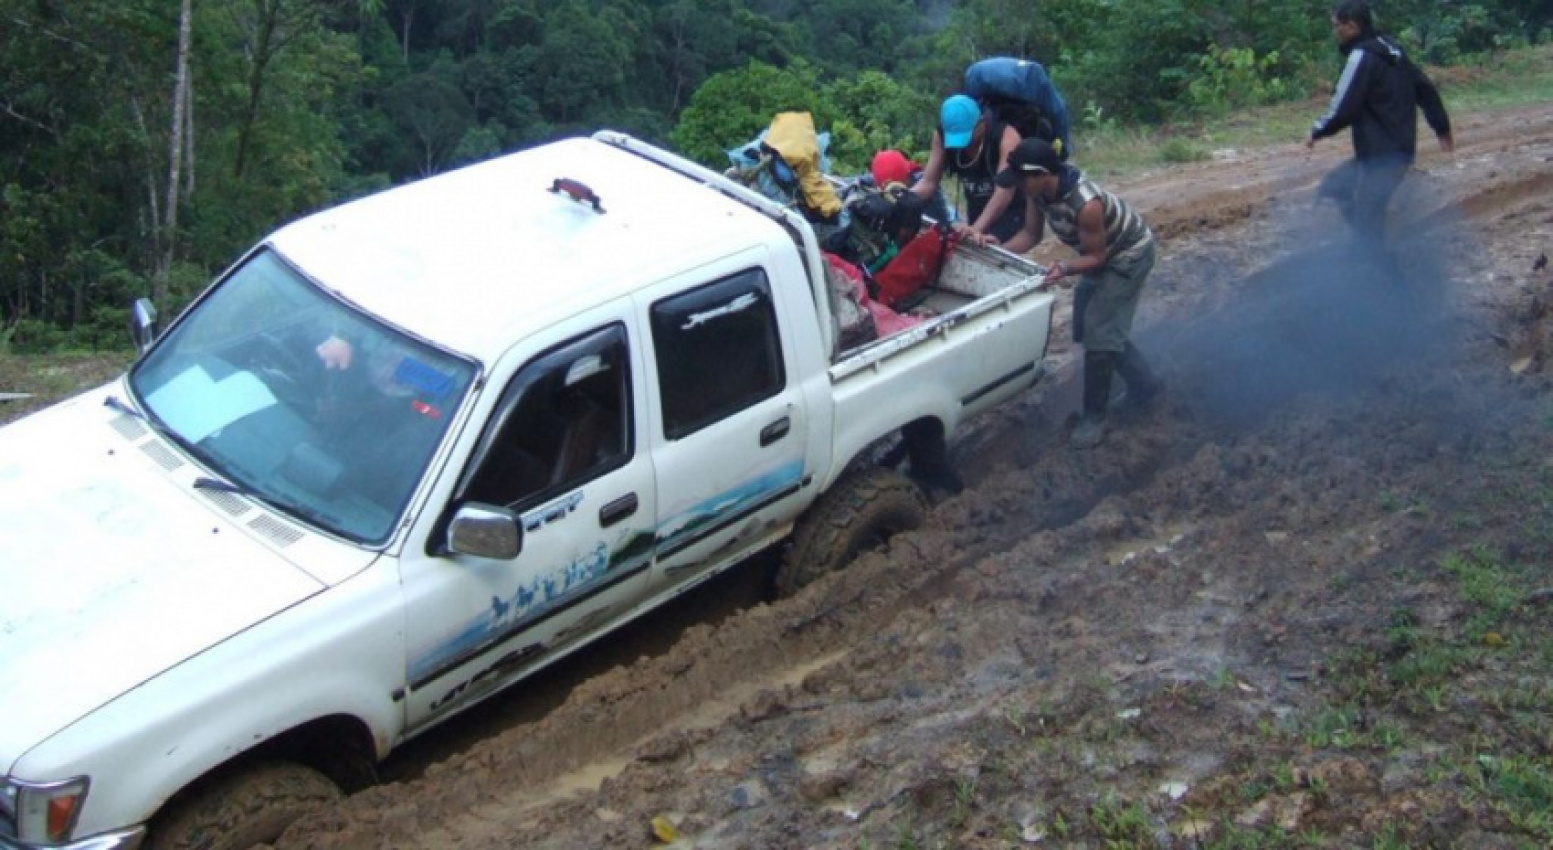 autos, cars, kia, autos news, fuel subsidy structure hurts rural sarawakians, says ngo